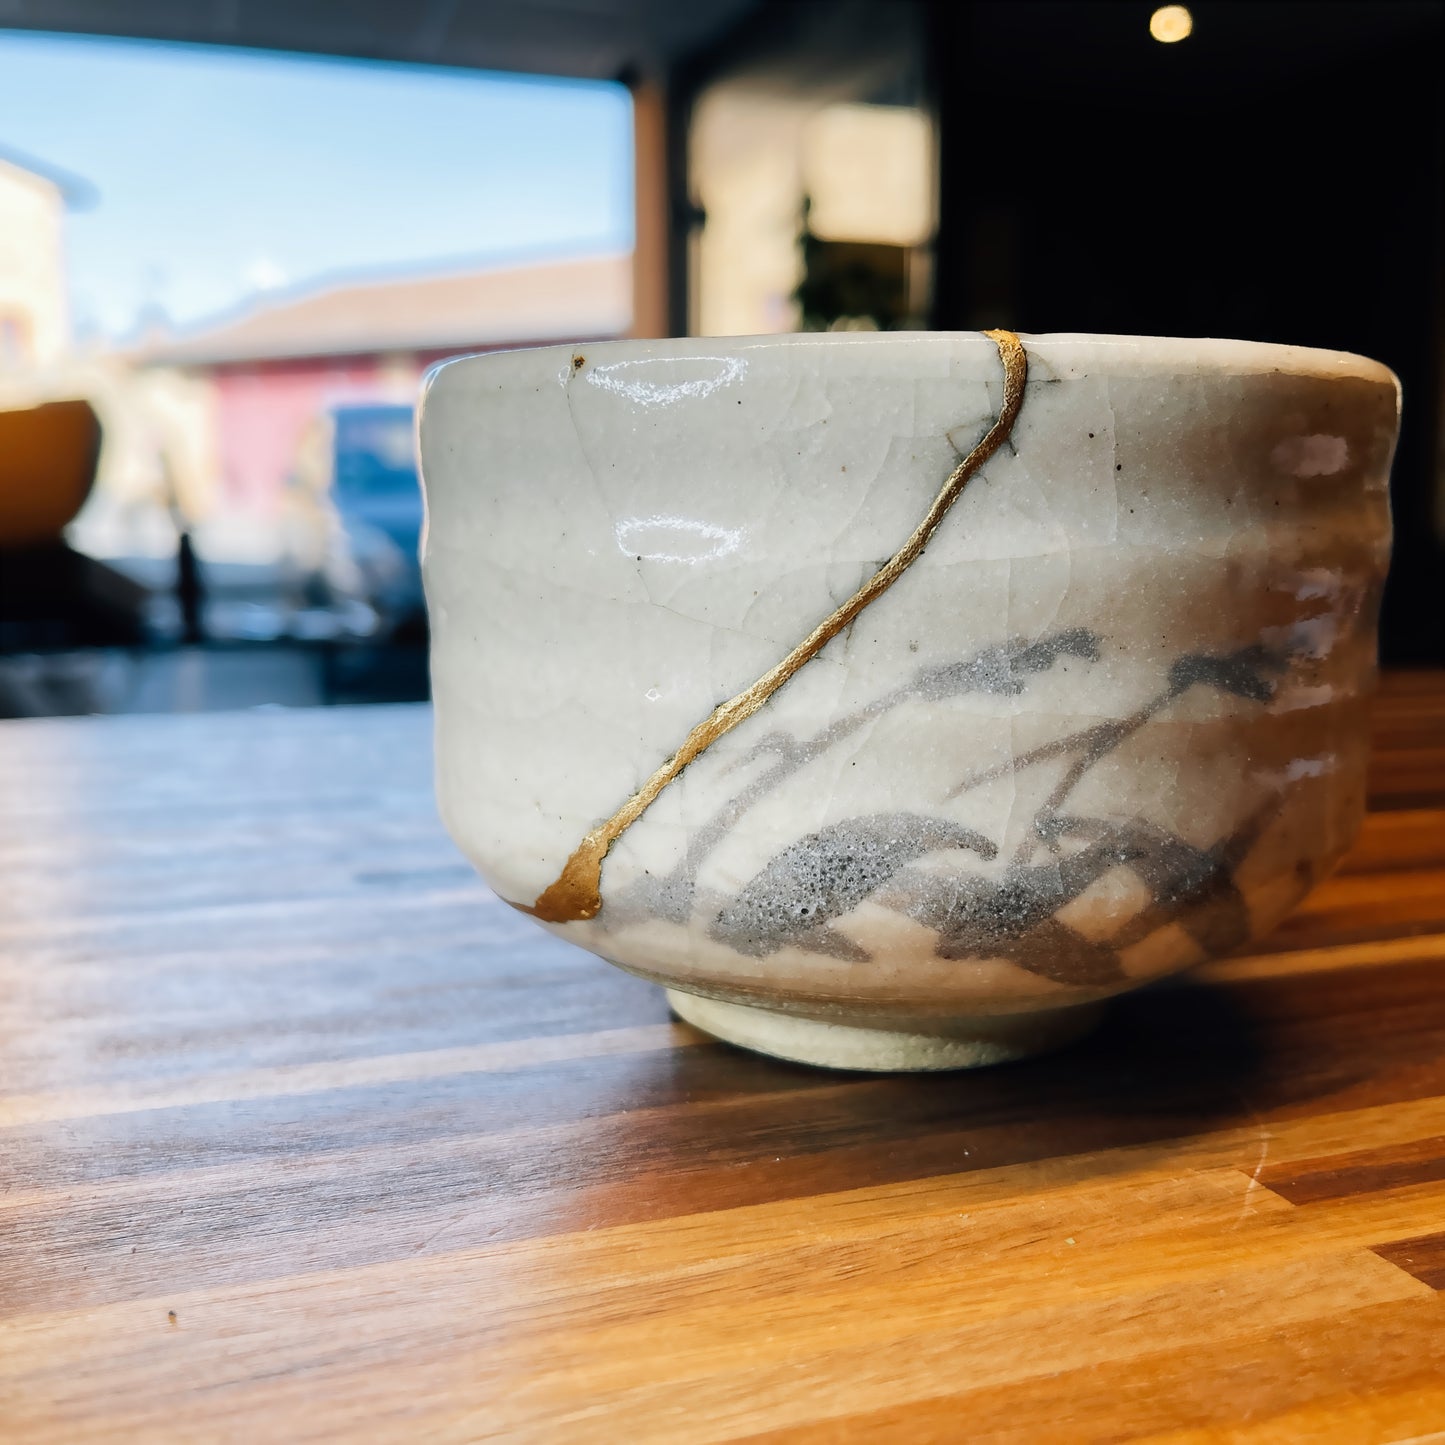 Bol à thé japonais - Shino Shigaraki beige avec sa boite en bois Tomobako